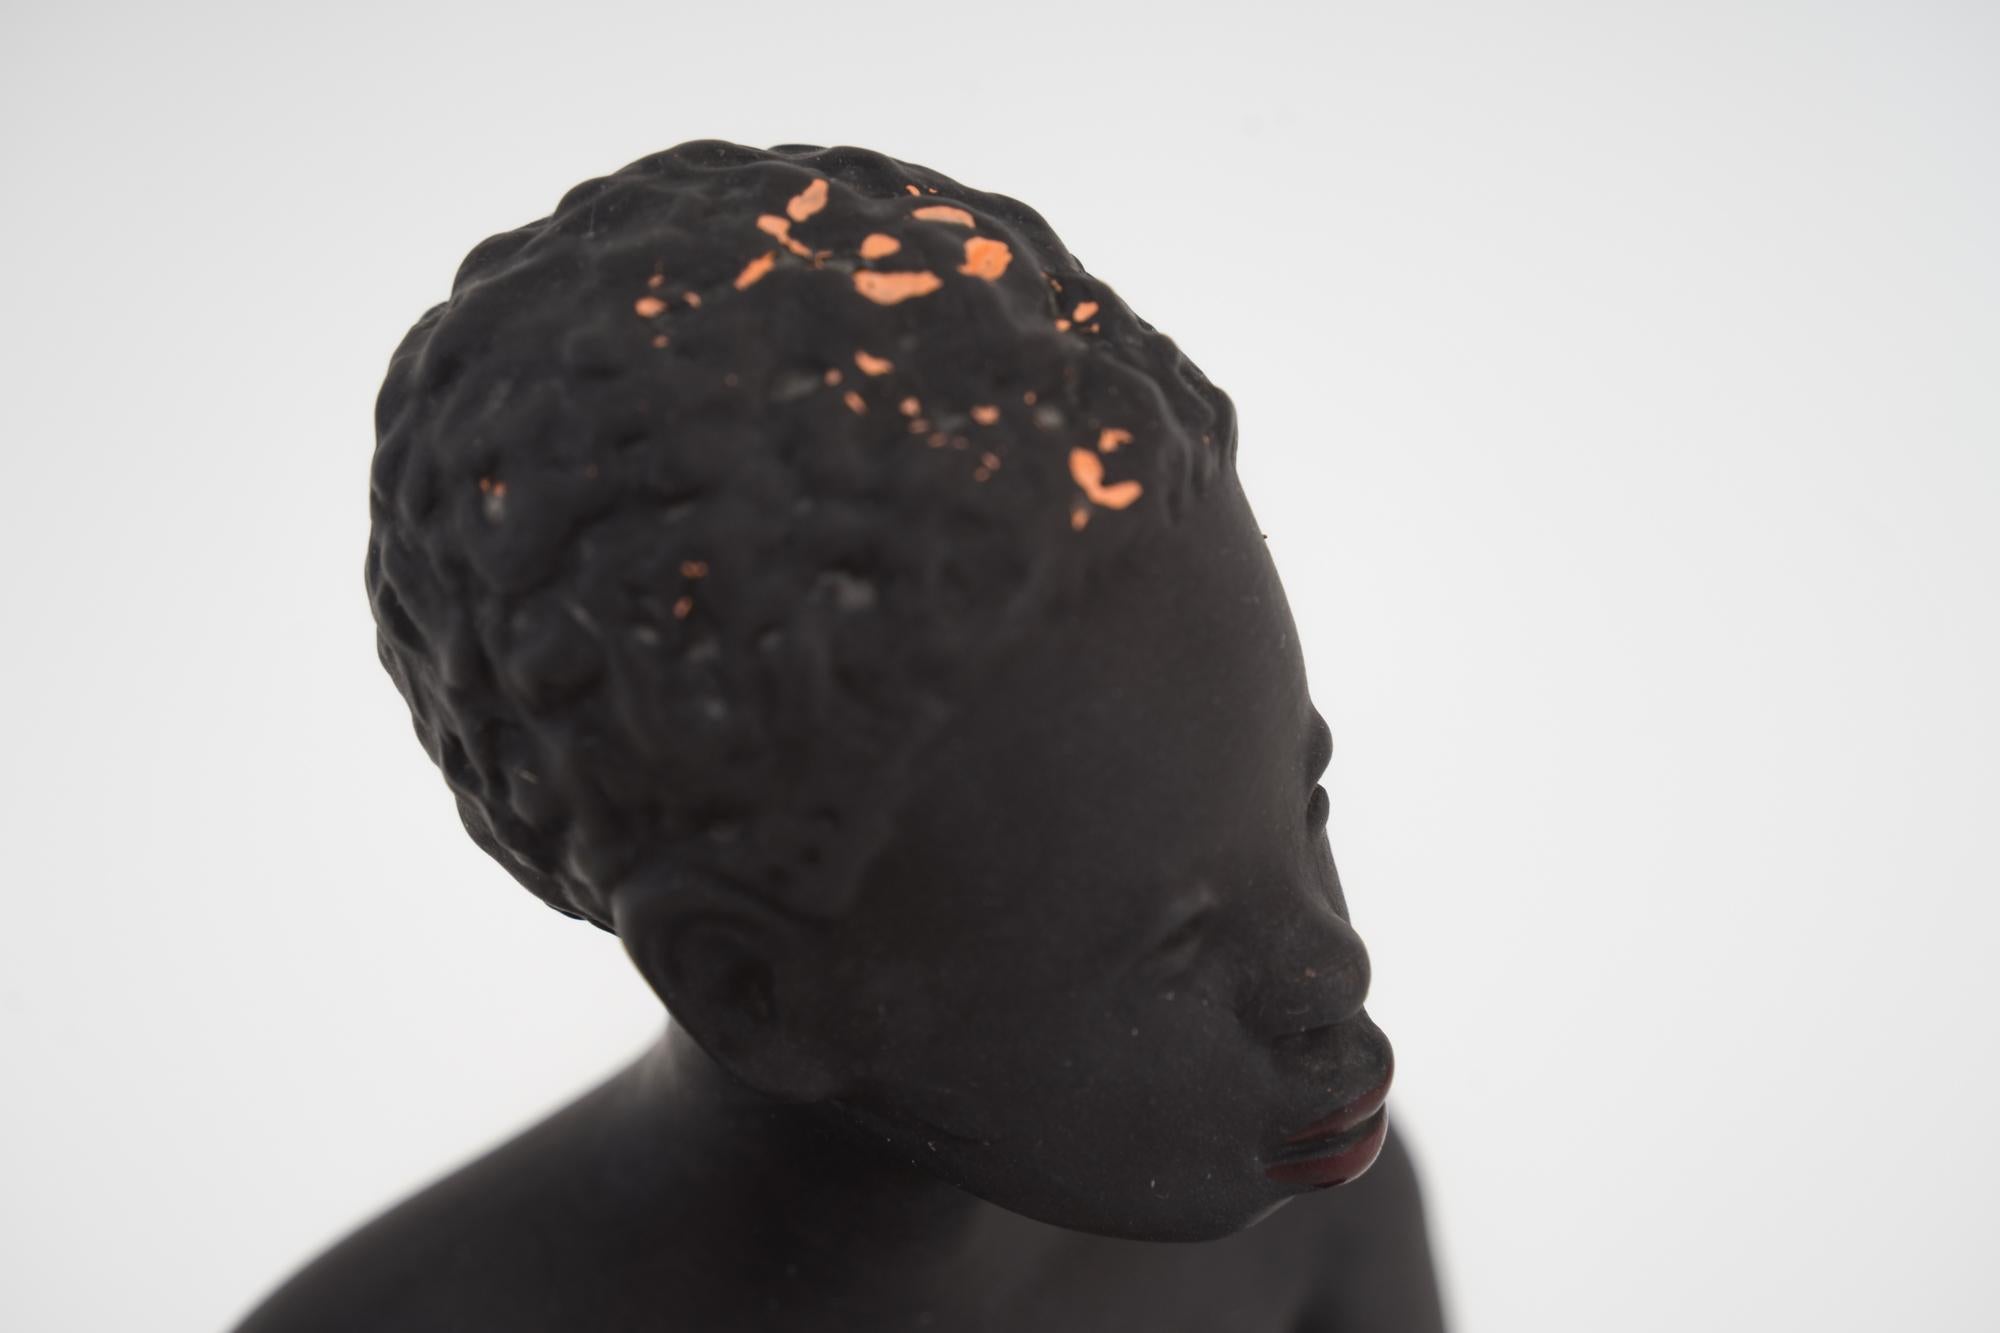 Sculpture de femmes africaines exotiques par Leopold Anzengruber, Vienne, années 1950
Malheureusement, la couleur de la tête est usée (voir les photos ci-jointes)
État d'origine